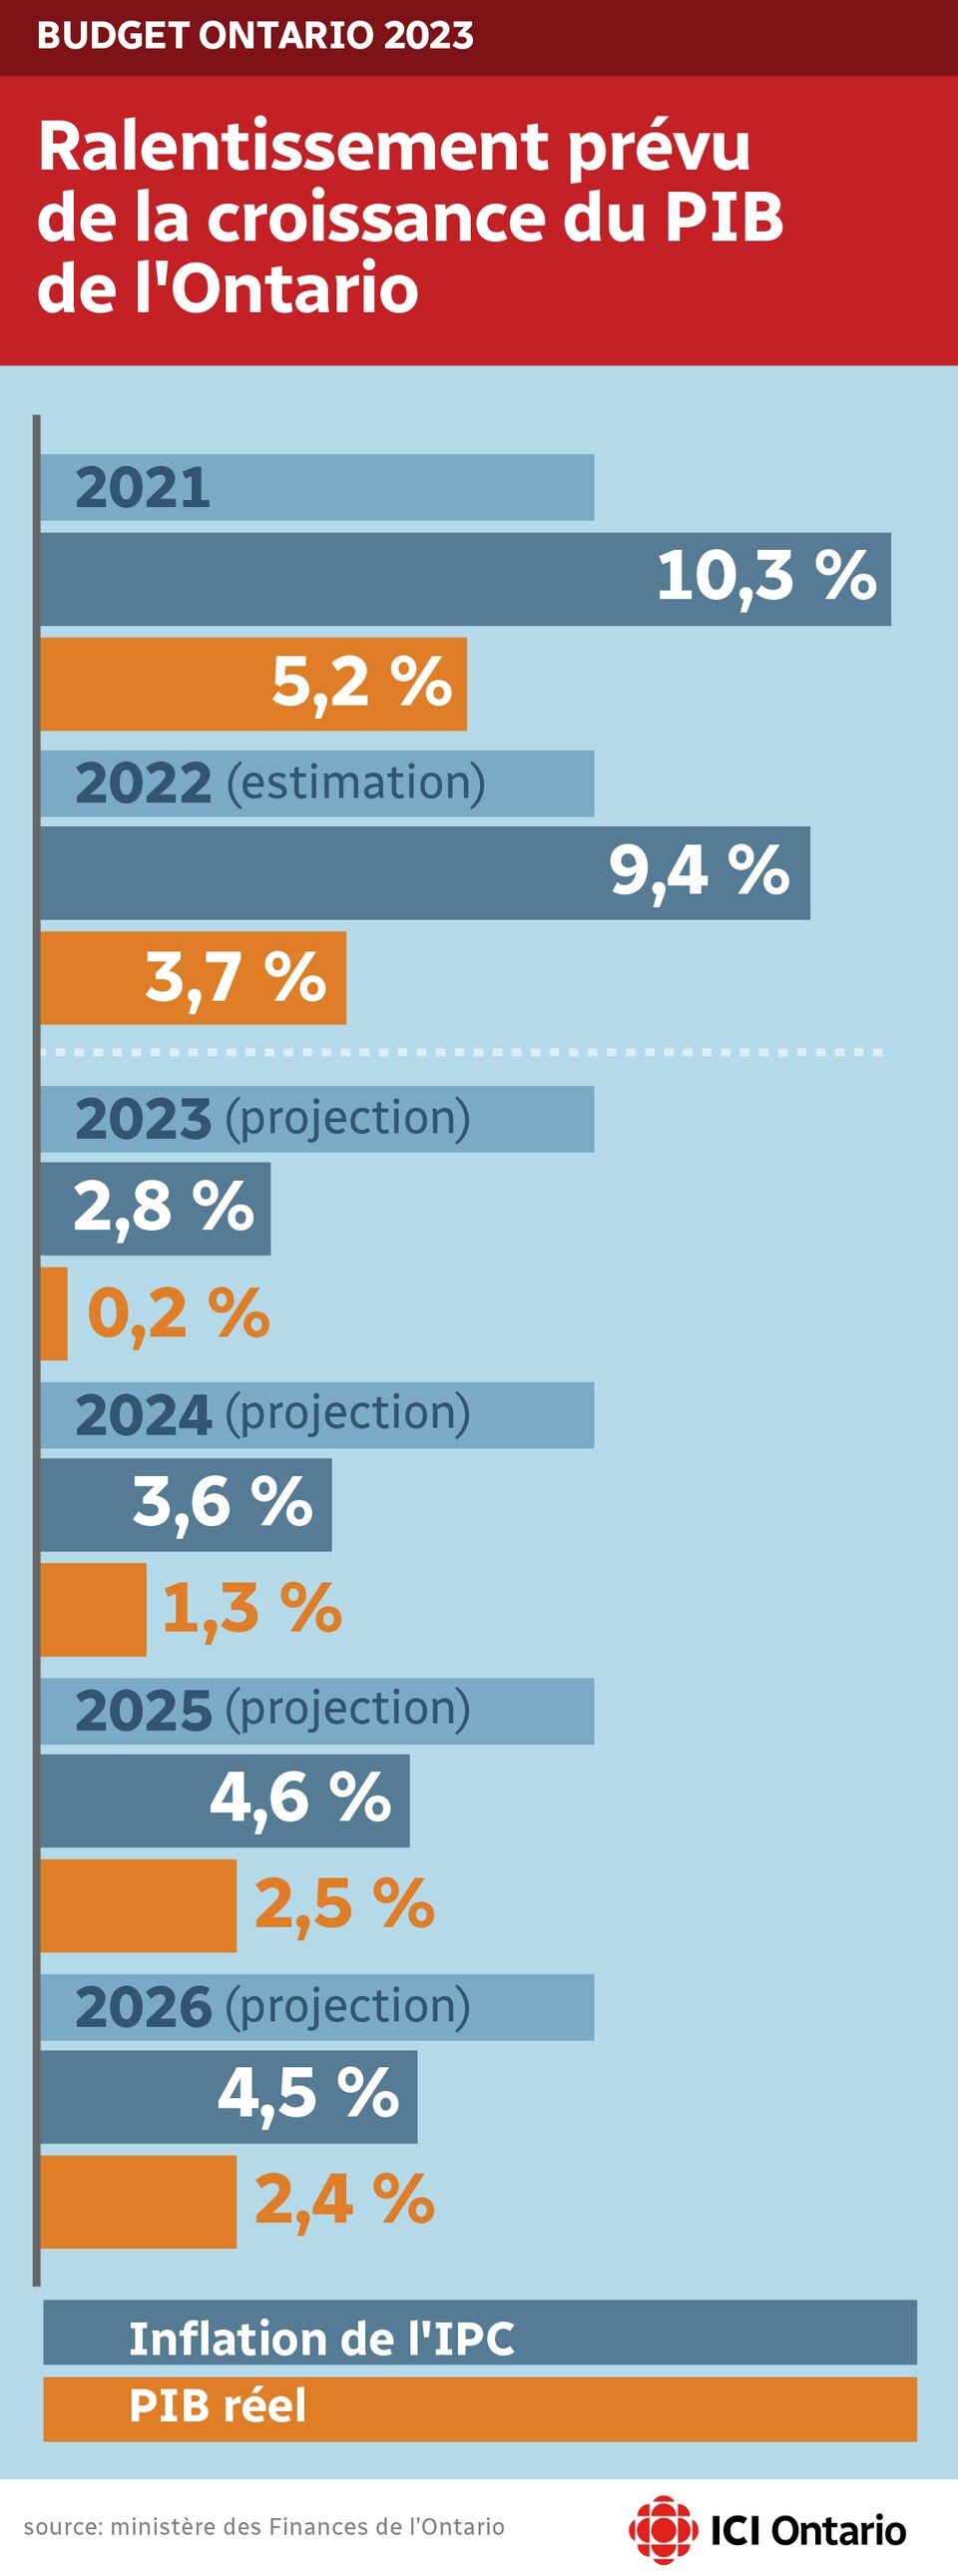 L'infographie indique que l'inflation devrait être de 2,8 % en 2023 et de 3,6 % en 2024, alors le PIB sera de 0,2 % et de 1,3 % respectivement.